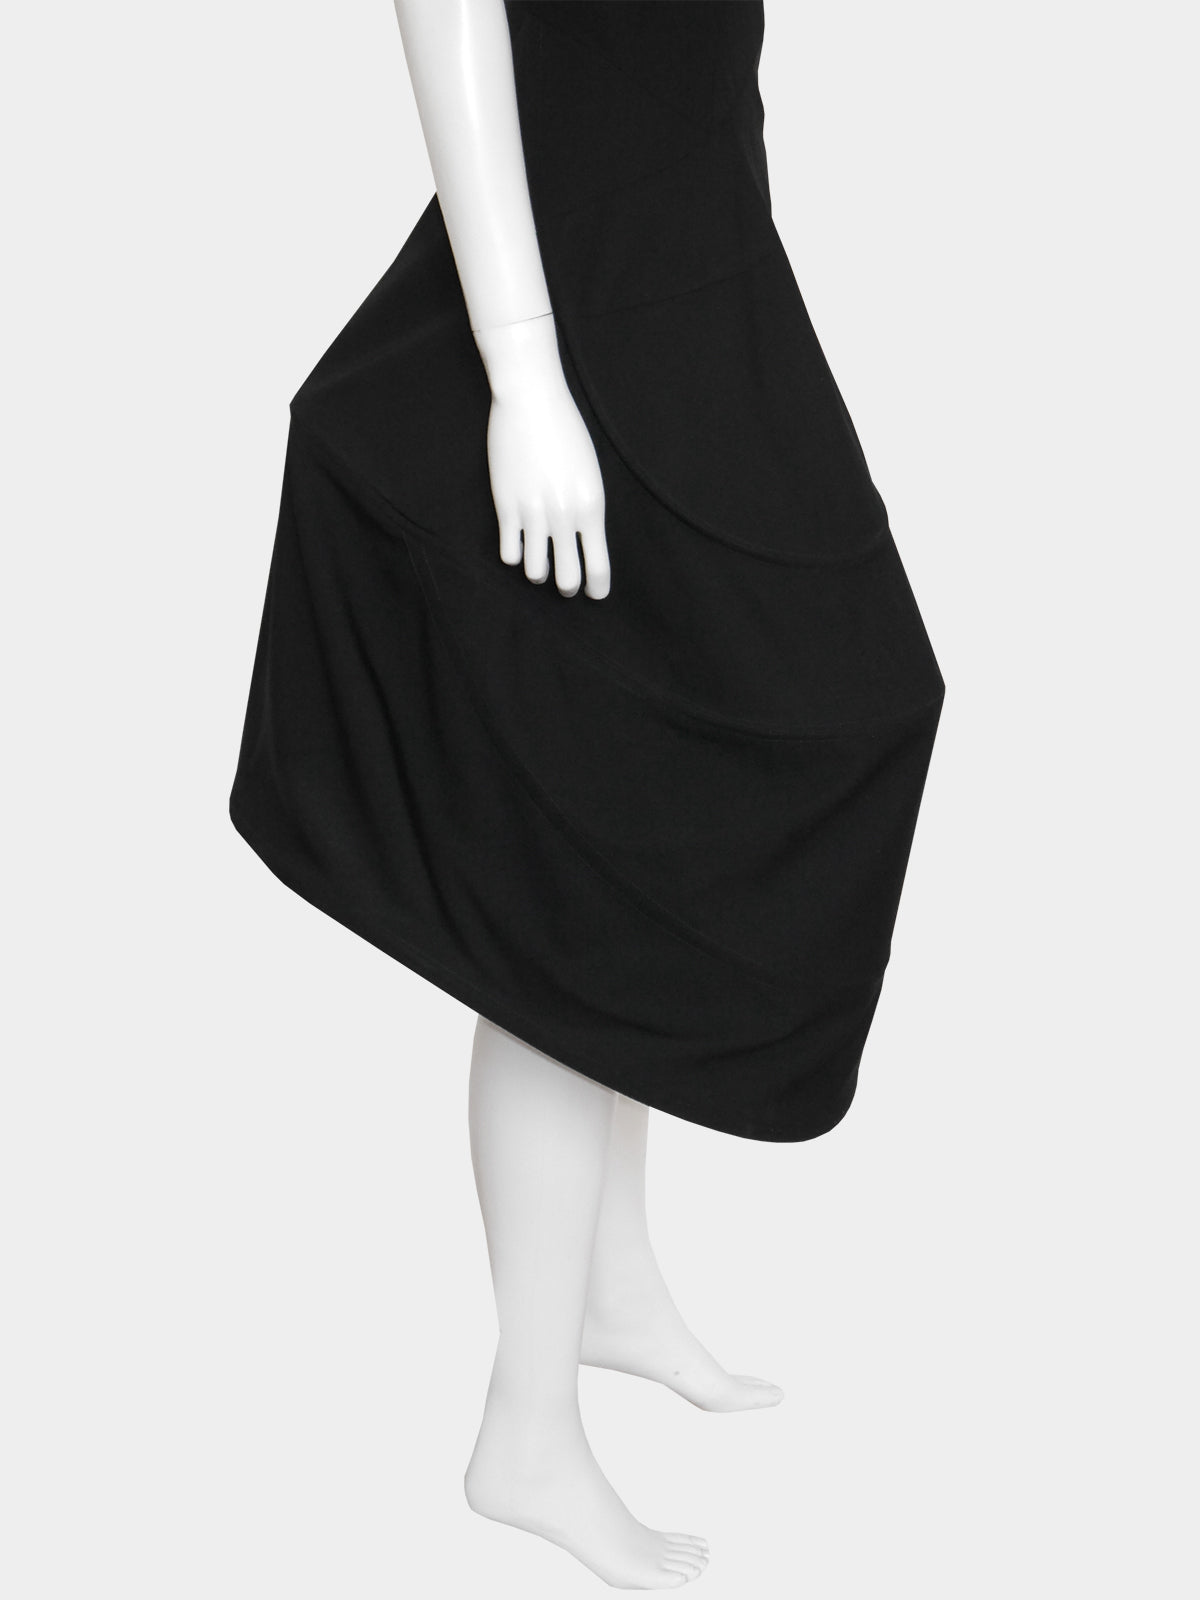 YOHJI YAMAMOTO Fall 1990 Asymmetrical Hoop Dress Size XS-S